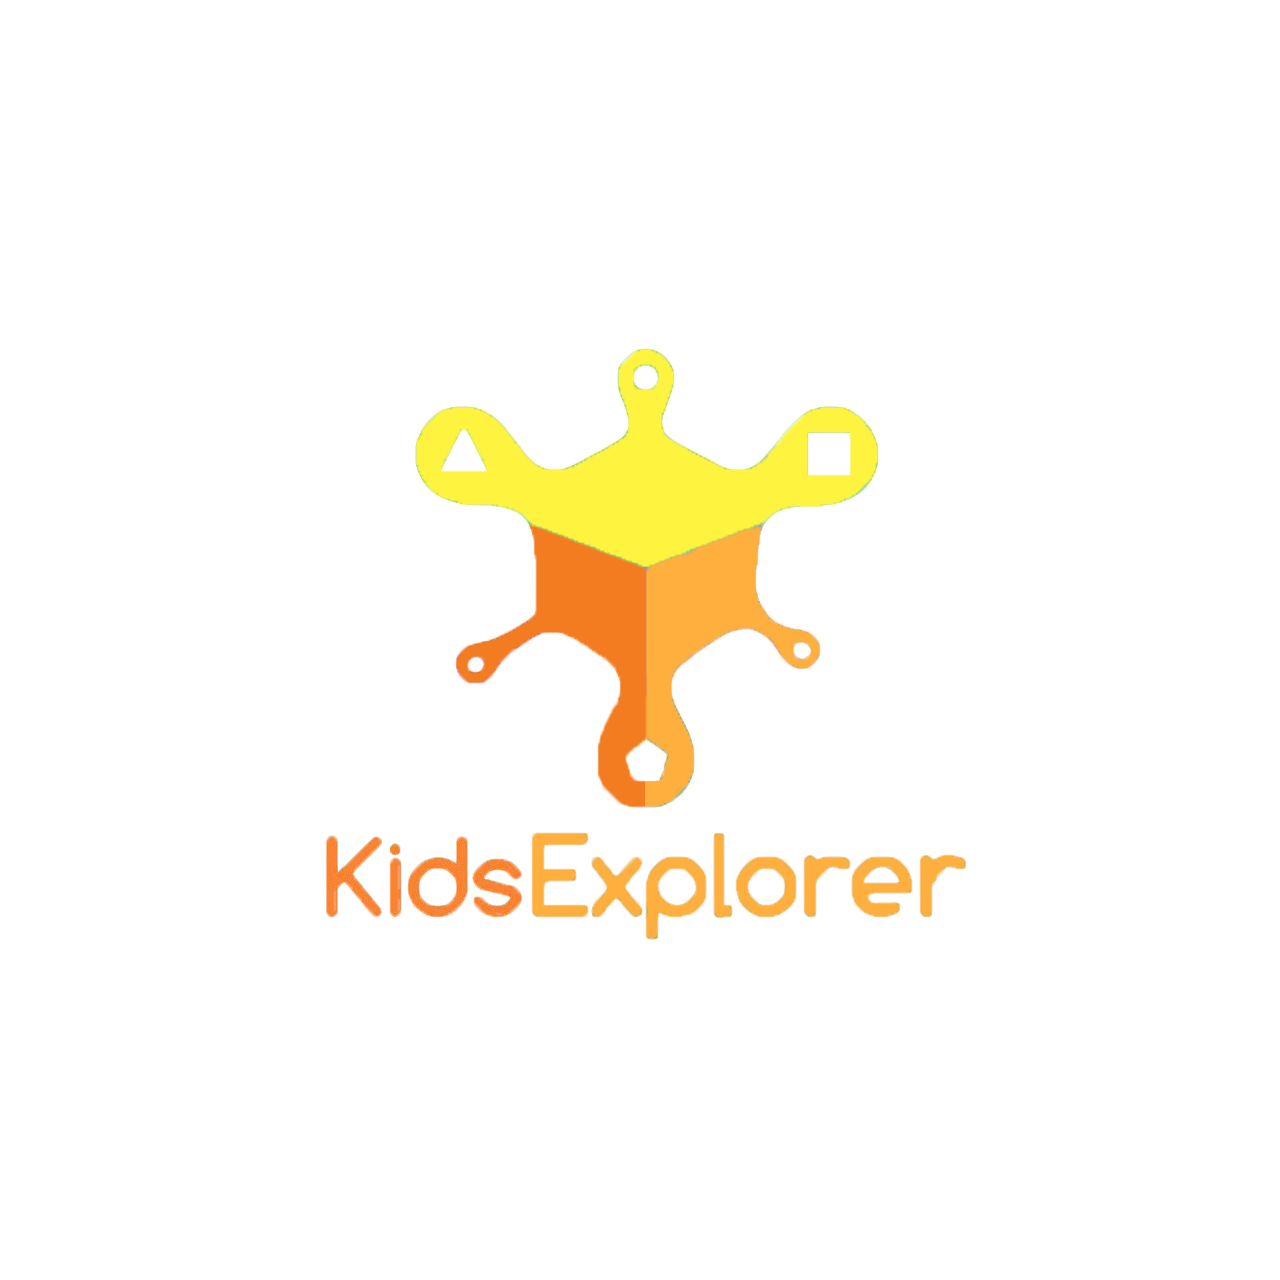 KidsExplorer_易智寶_logo - Shina Yang